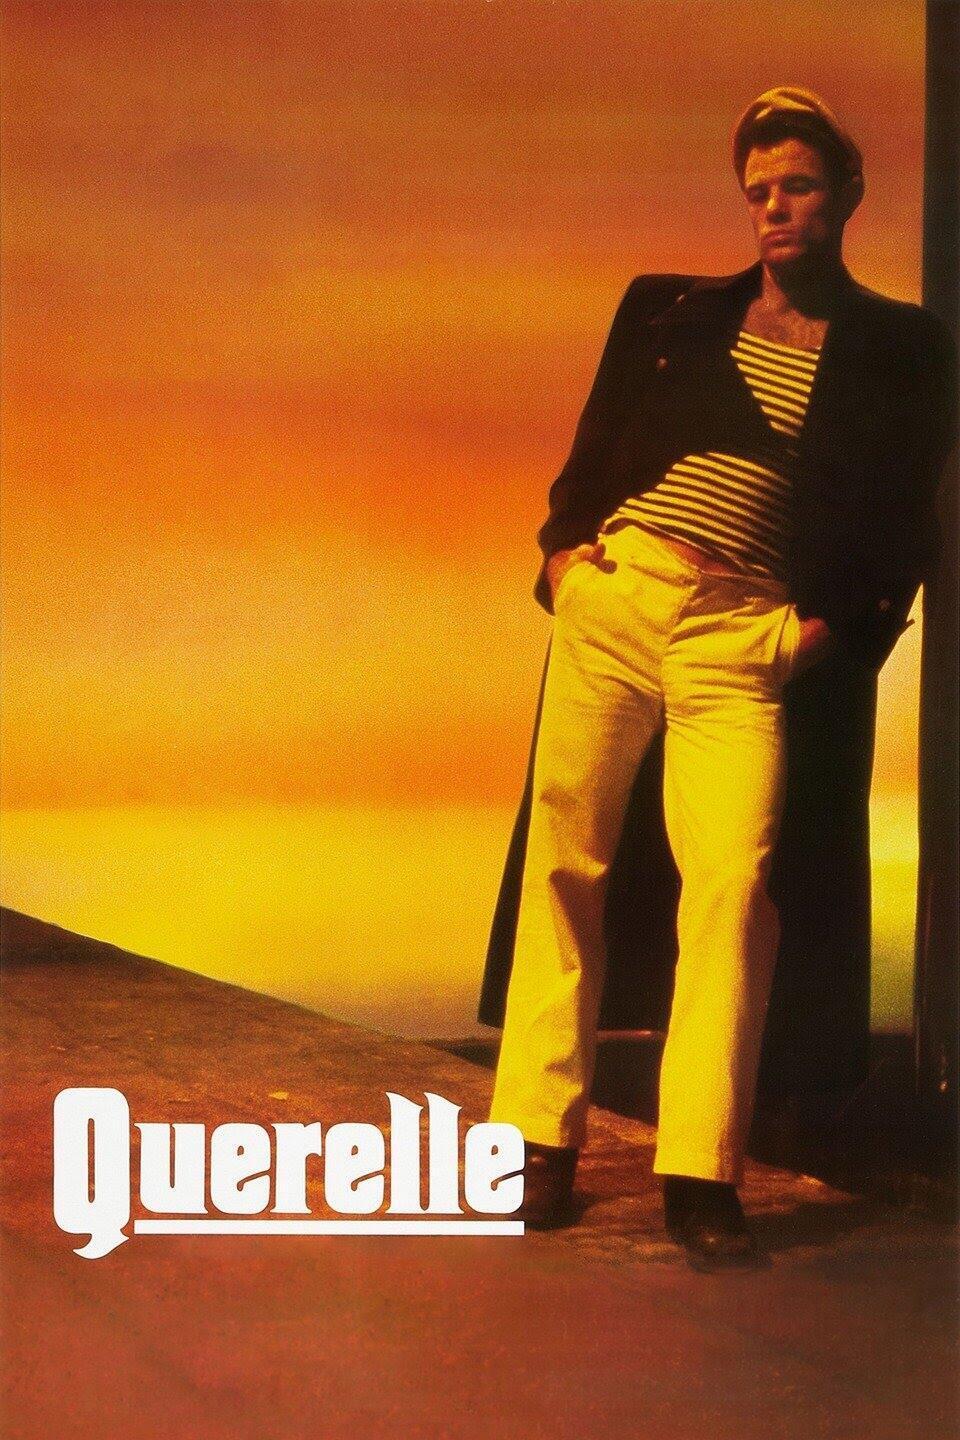 כרזת הסרט Querelle מ-1982 